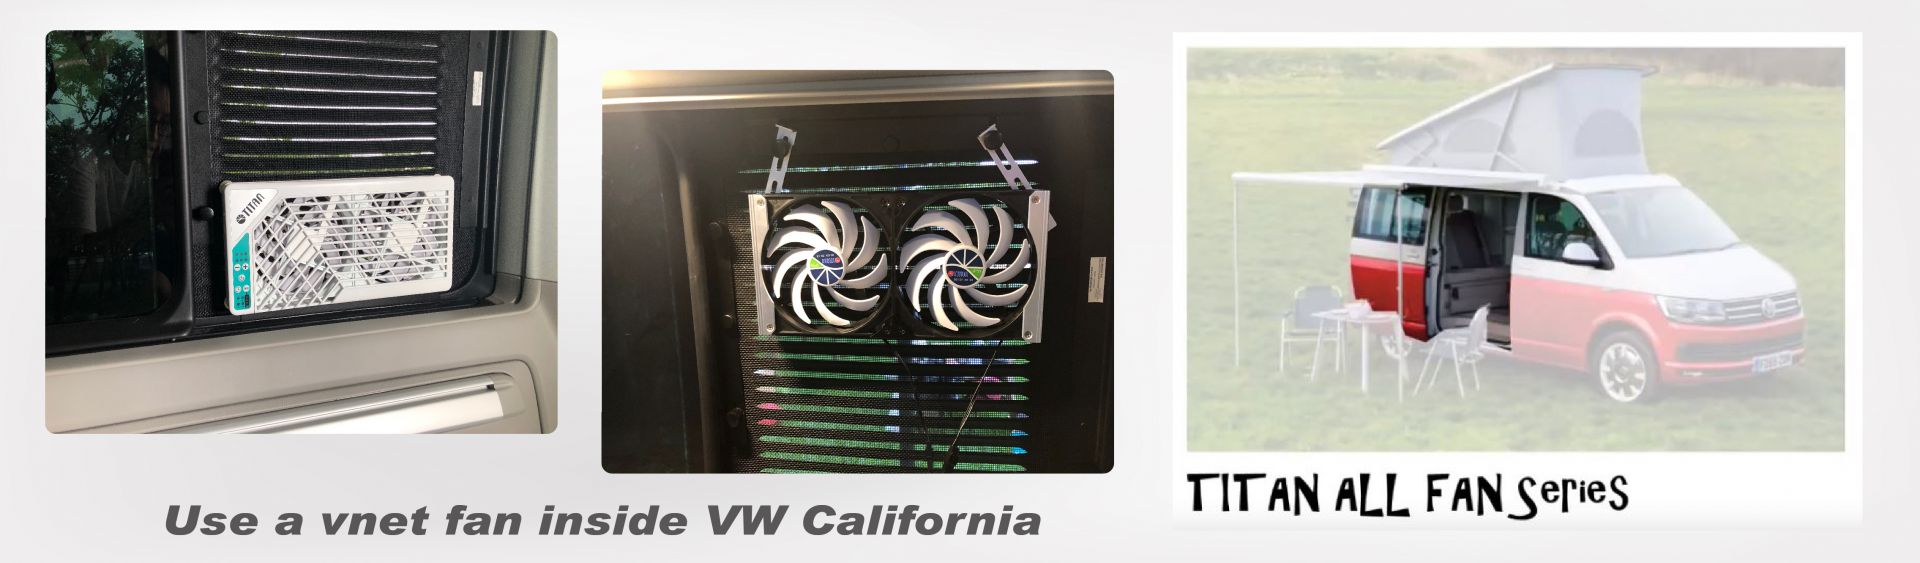 Ventilación interior de VW California: ventana lateral